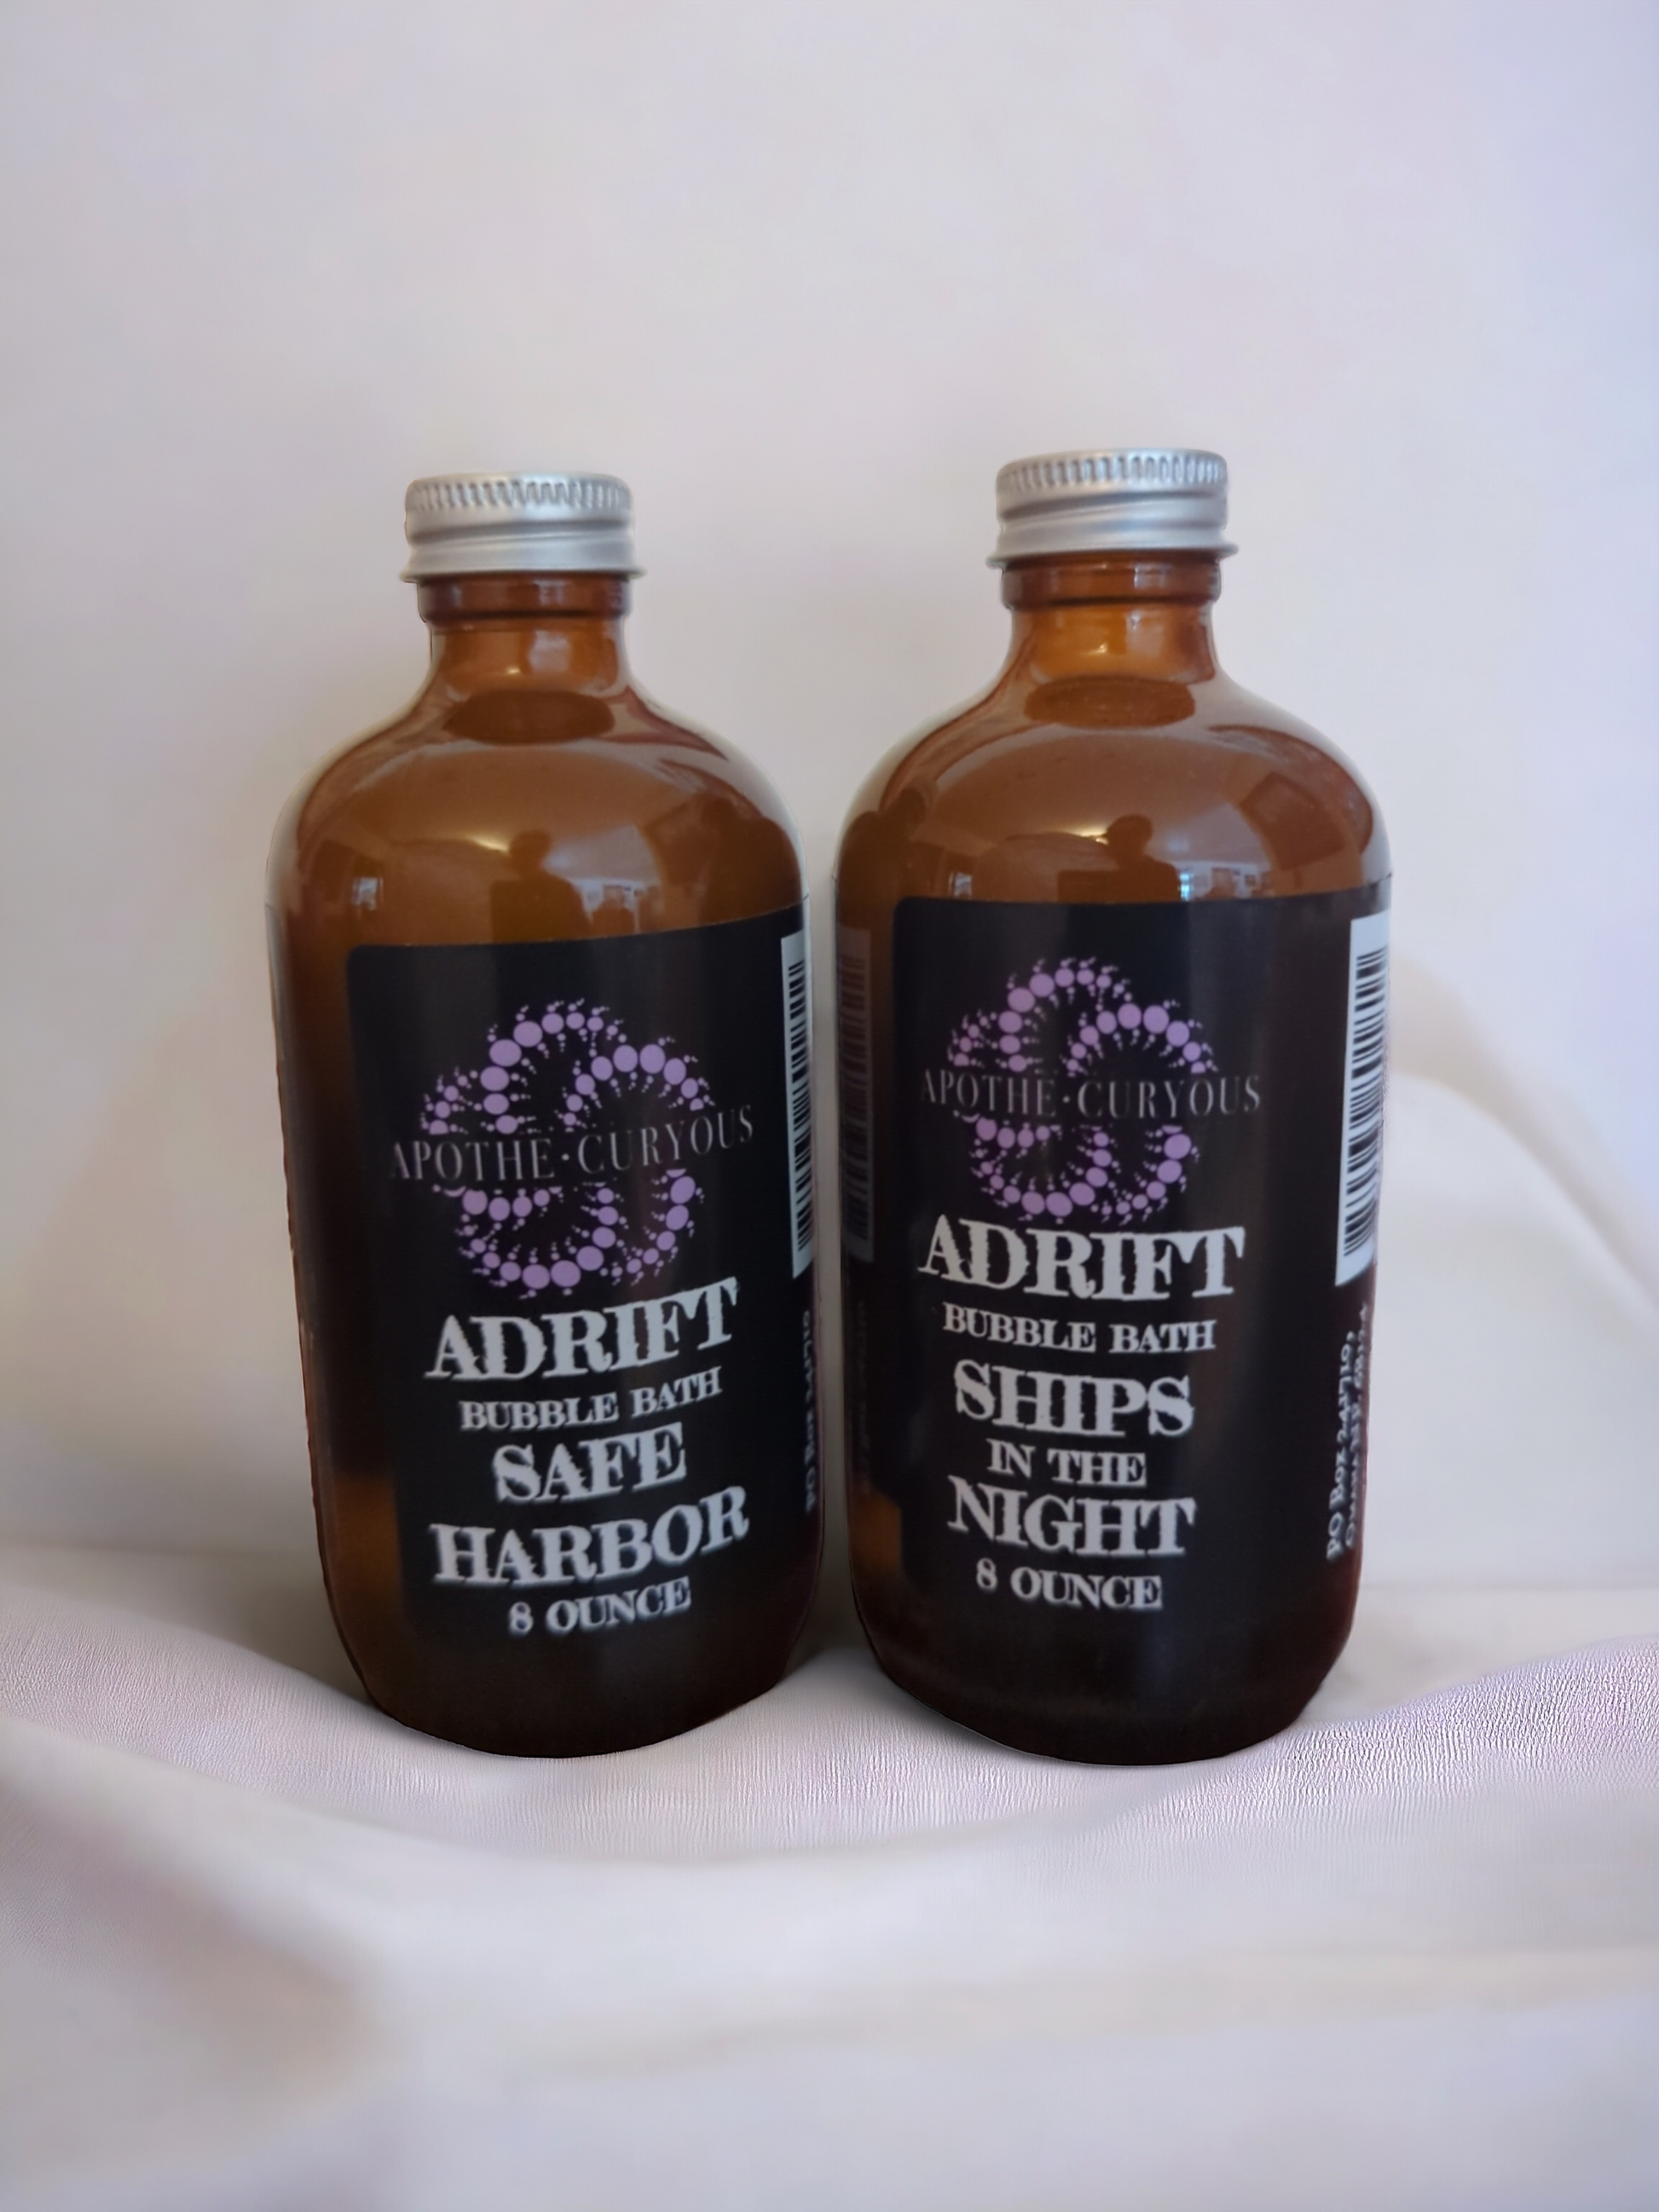 Adrift bubble bath 2 scent options, 8 ounce glass bottle, Apothecuryous